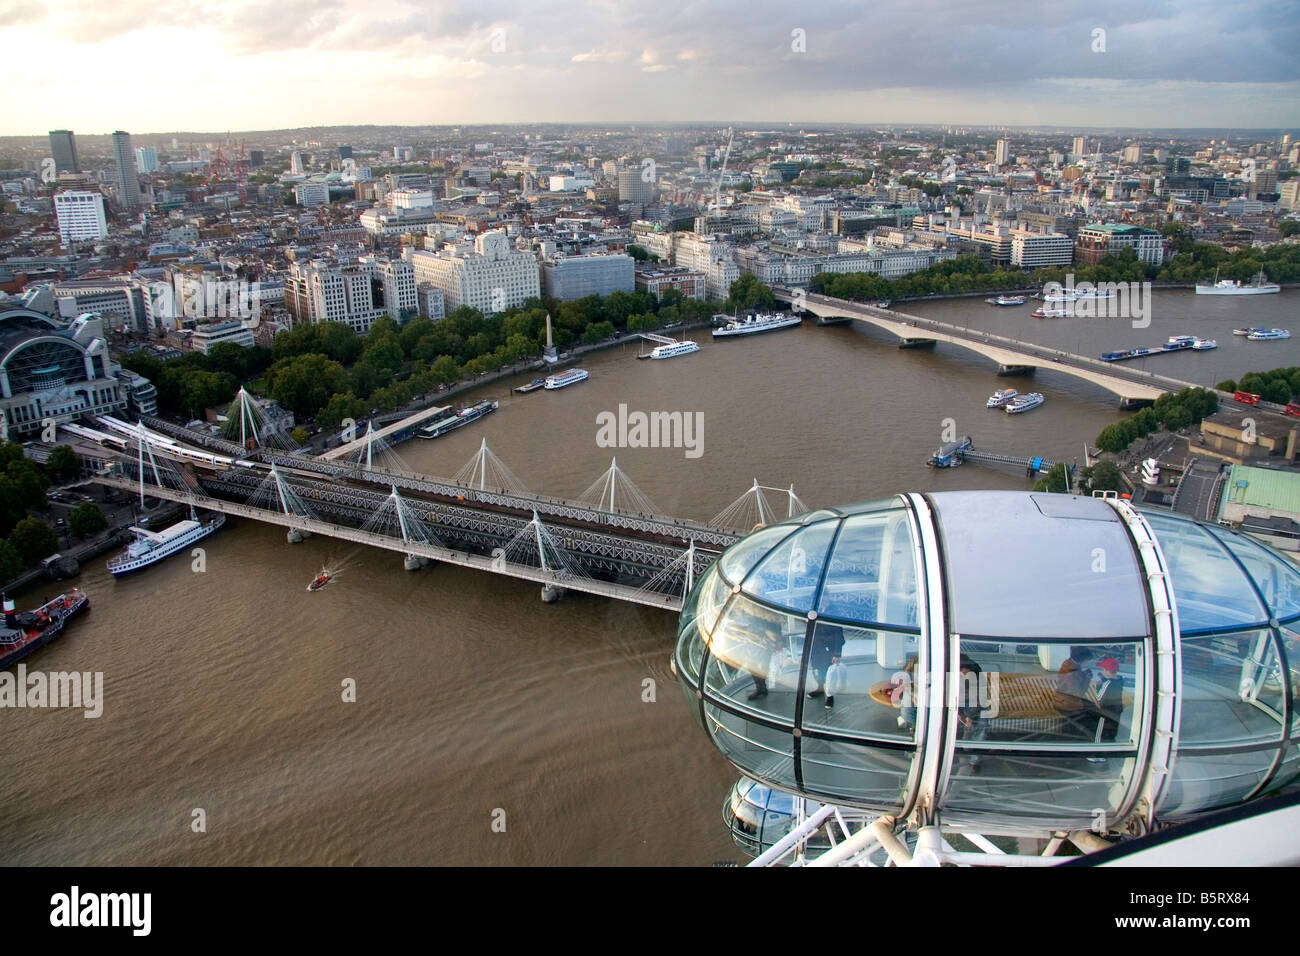 Vue de la ville de Londres à partir de l'Oeil de Londres Angleterre Banque D'Images